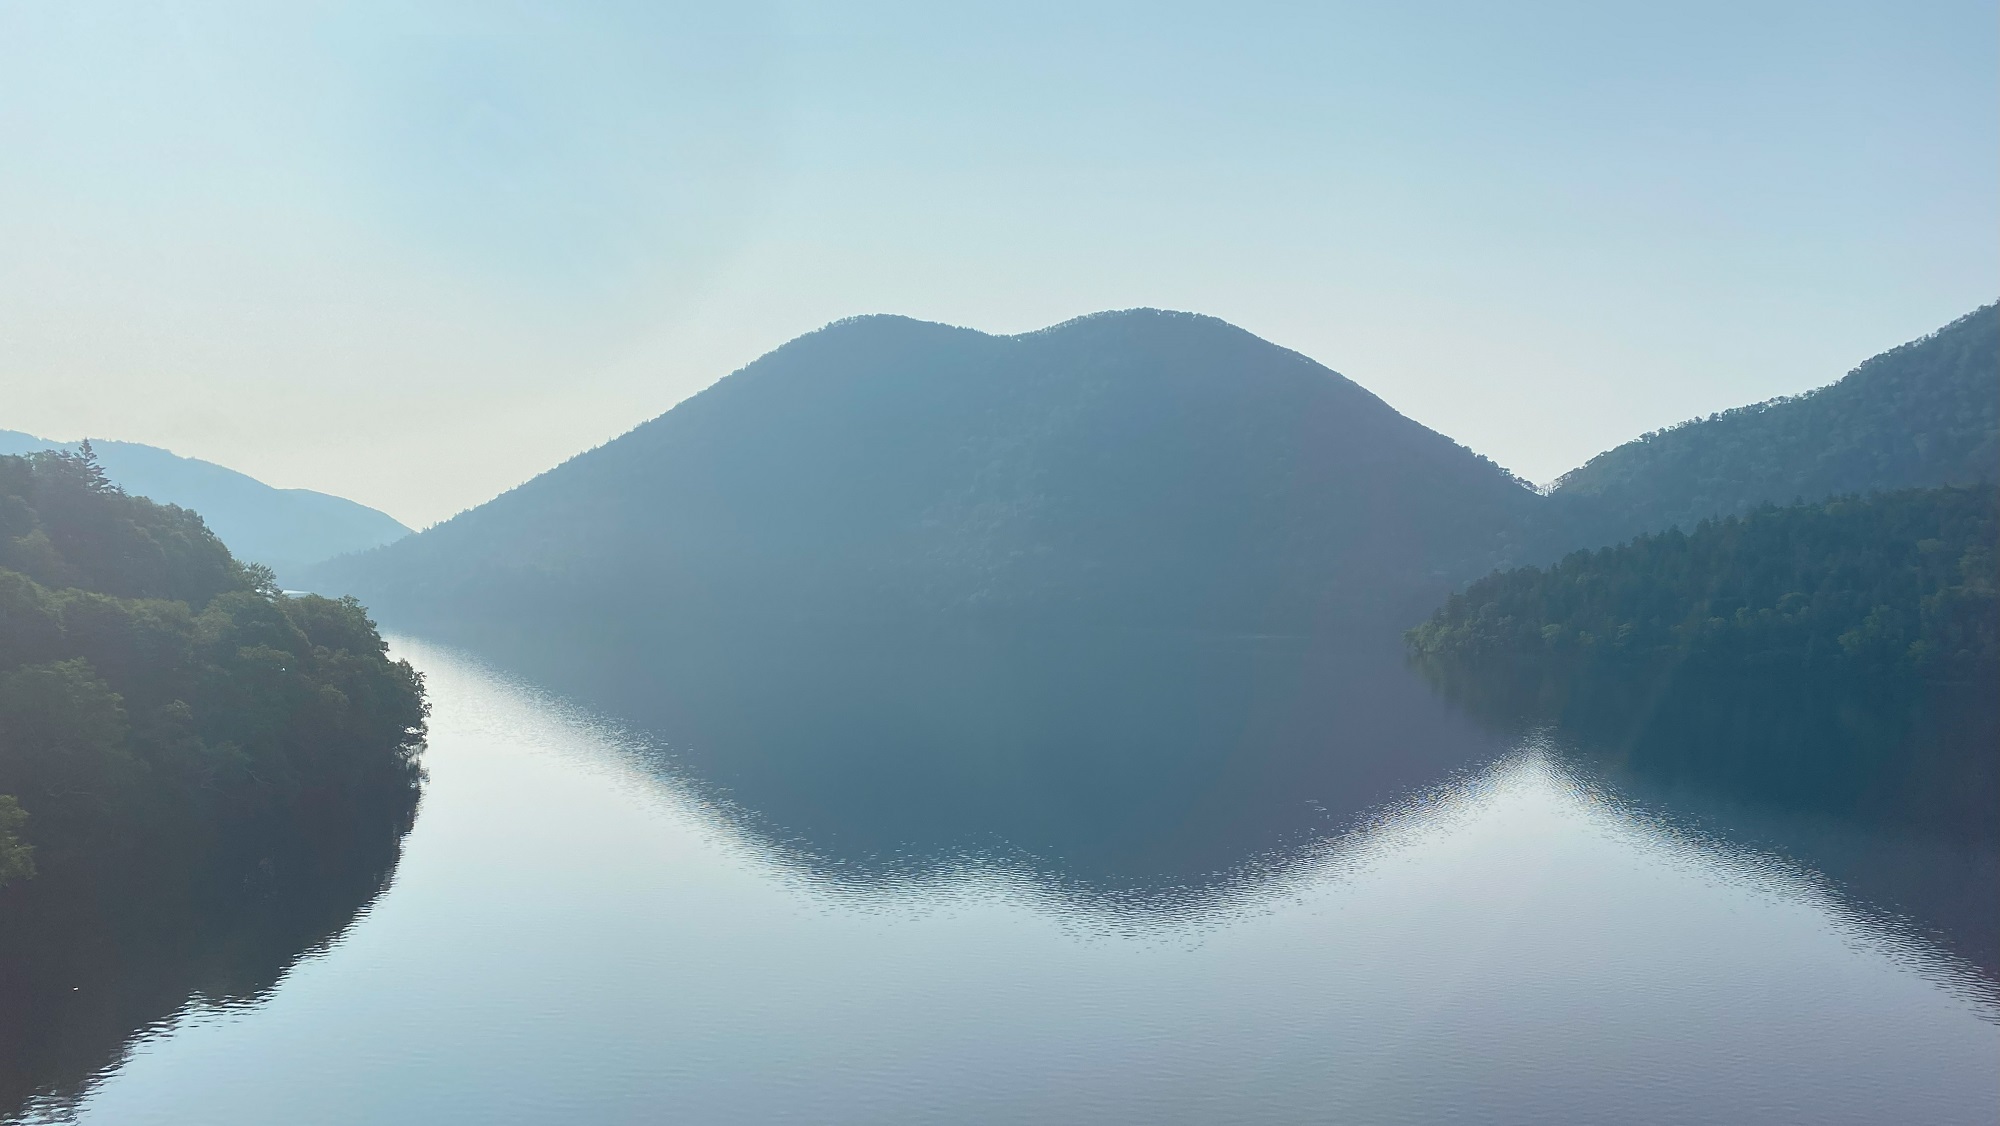 朝方のくちびる山。天望山の姿と湖面に映る影からそう呼ばれます。